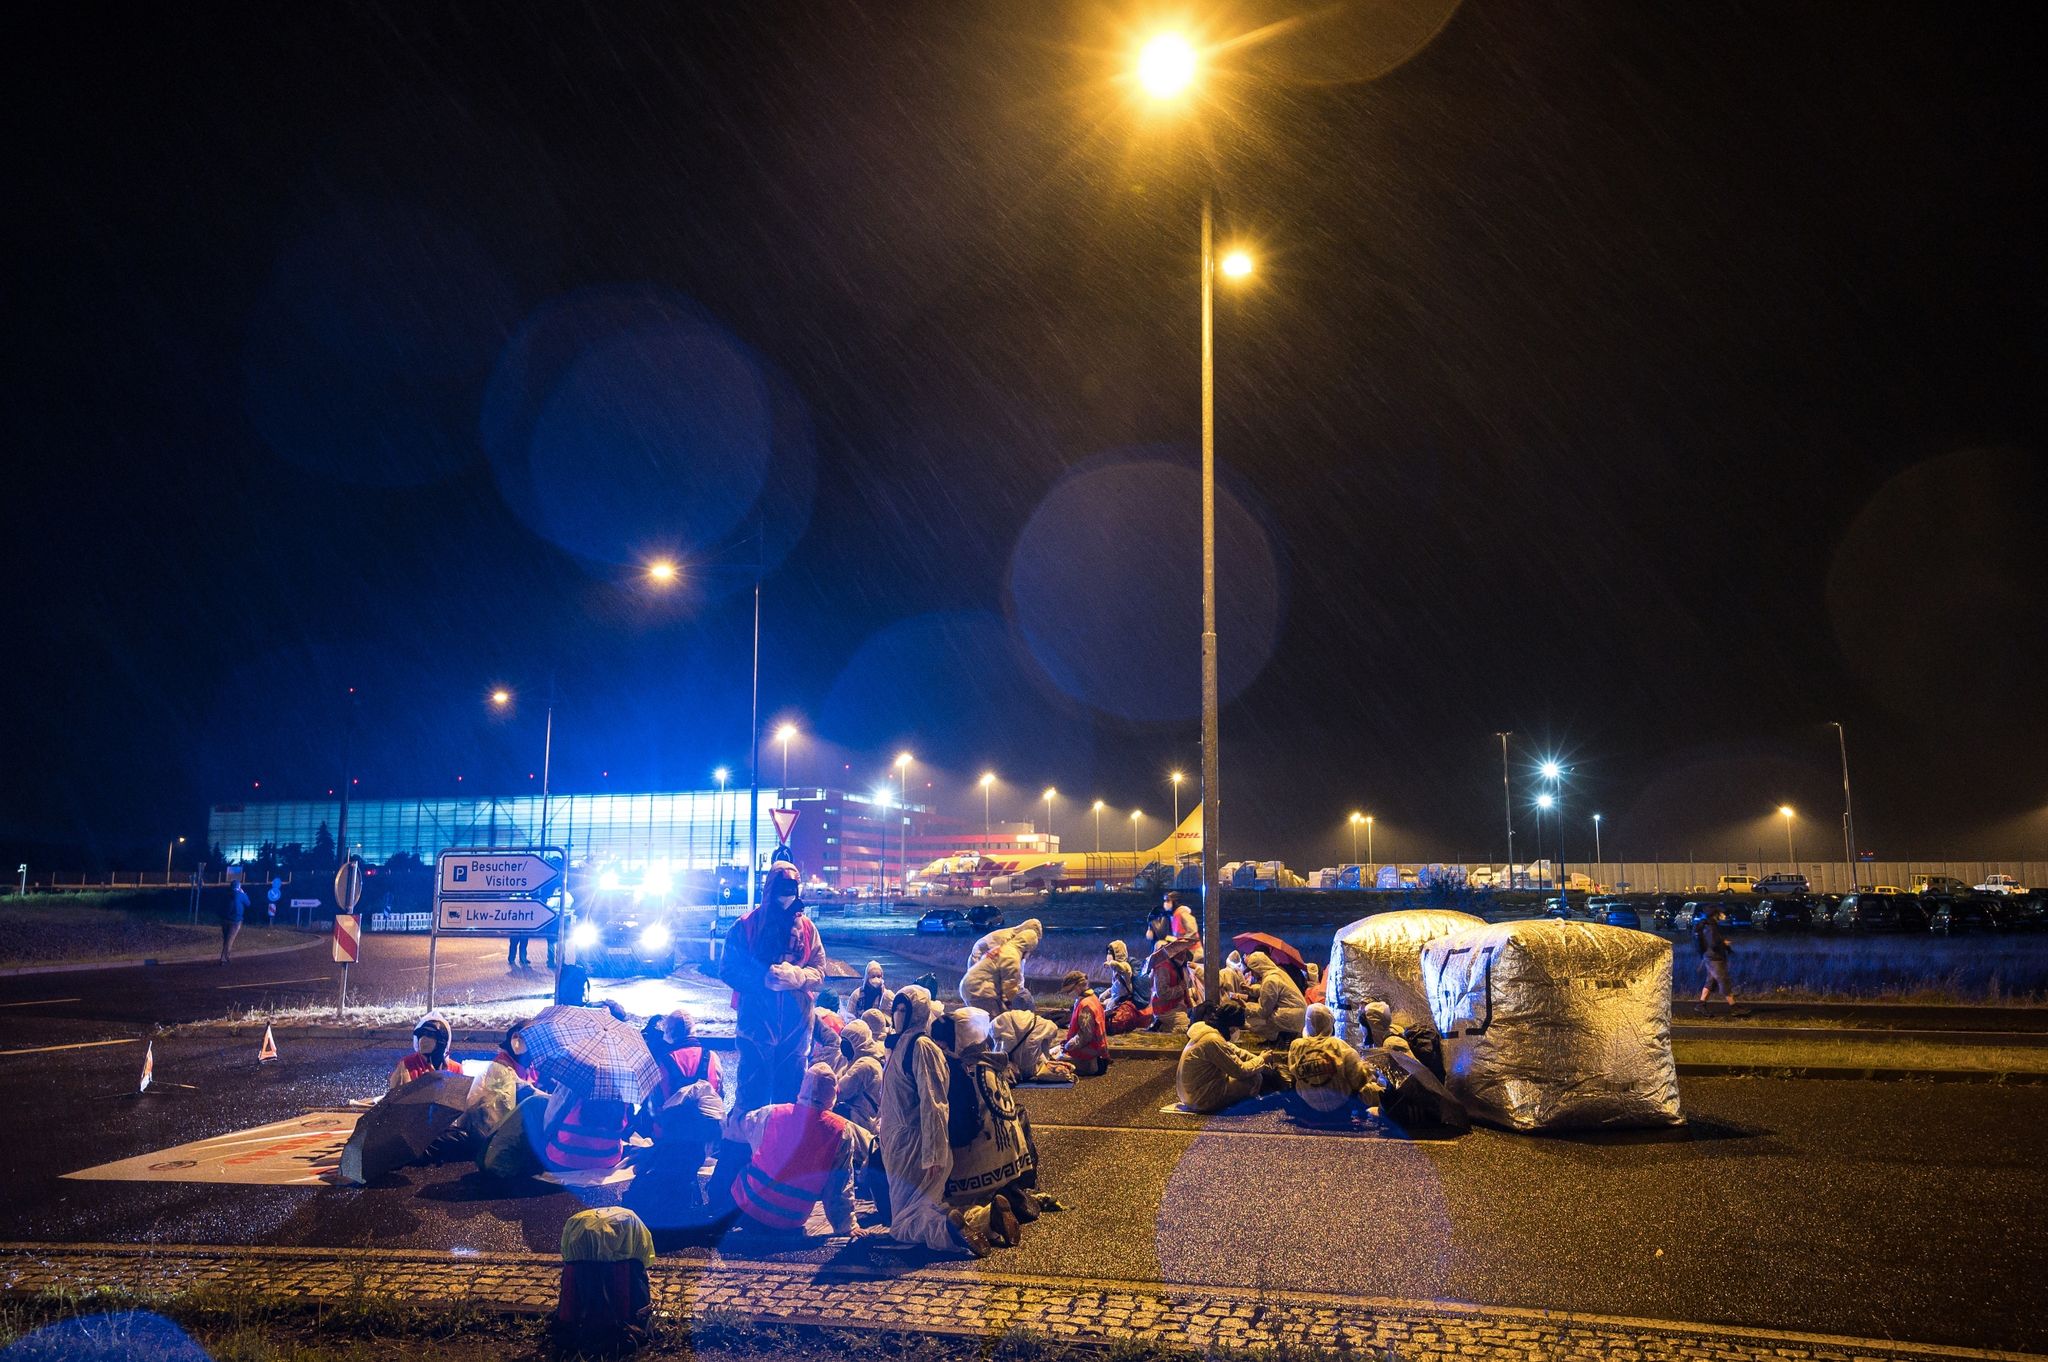 Aktivisten der Initiative "CancelLEJ" blockieren eine LKW Zufahrt des DHL-Terminals.